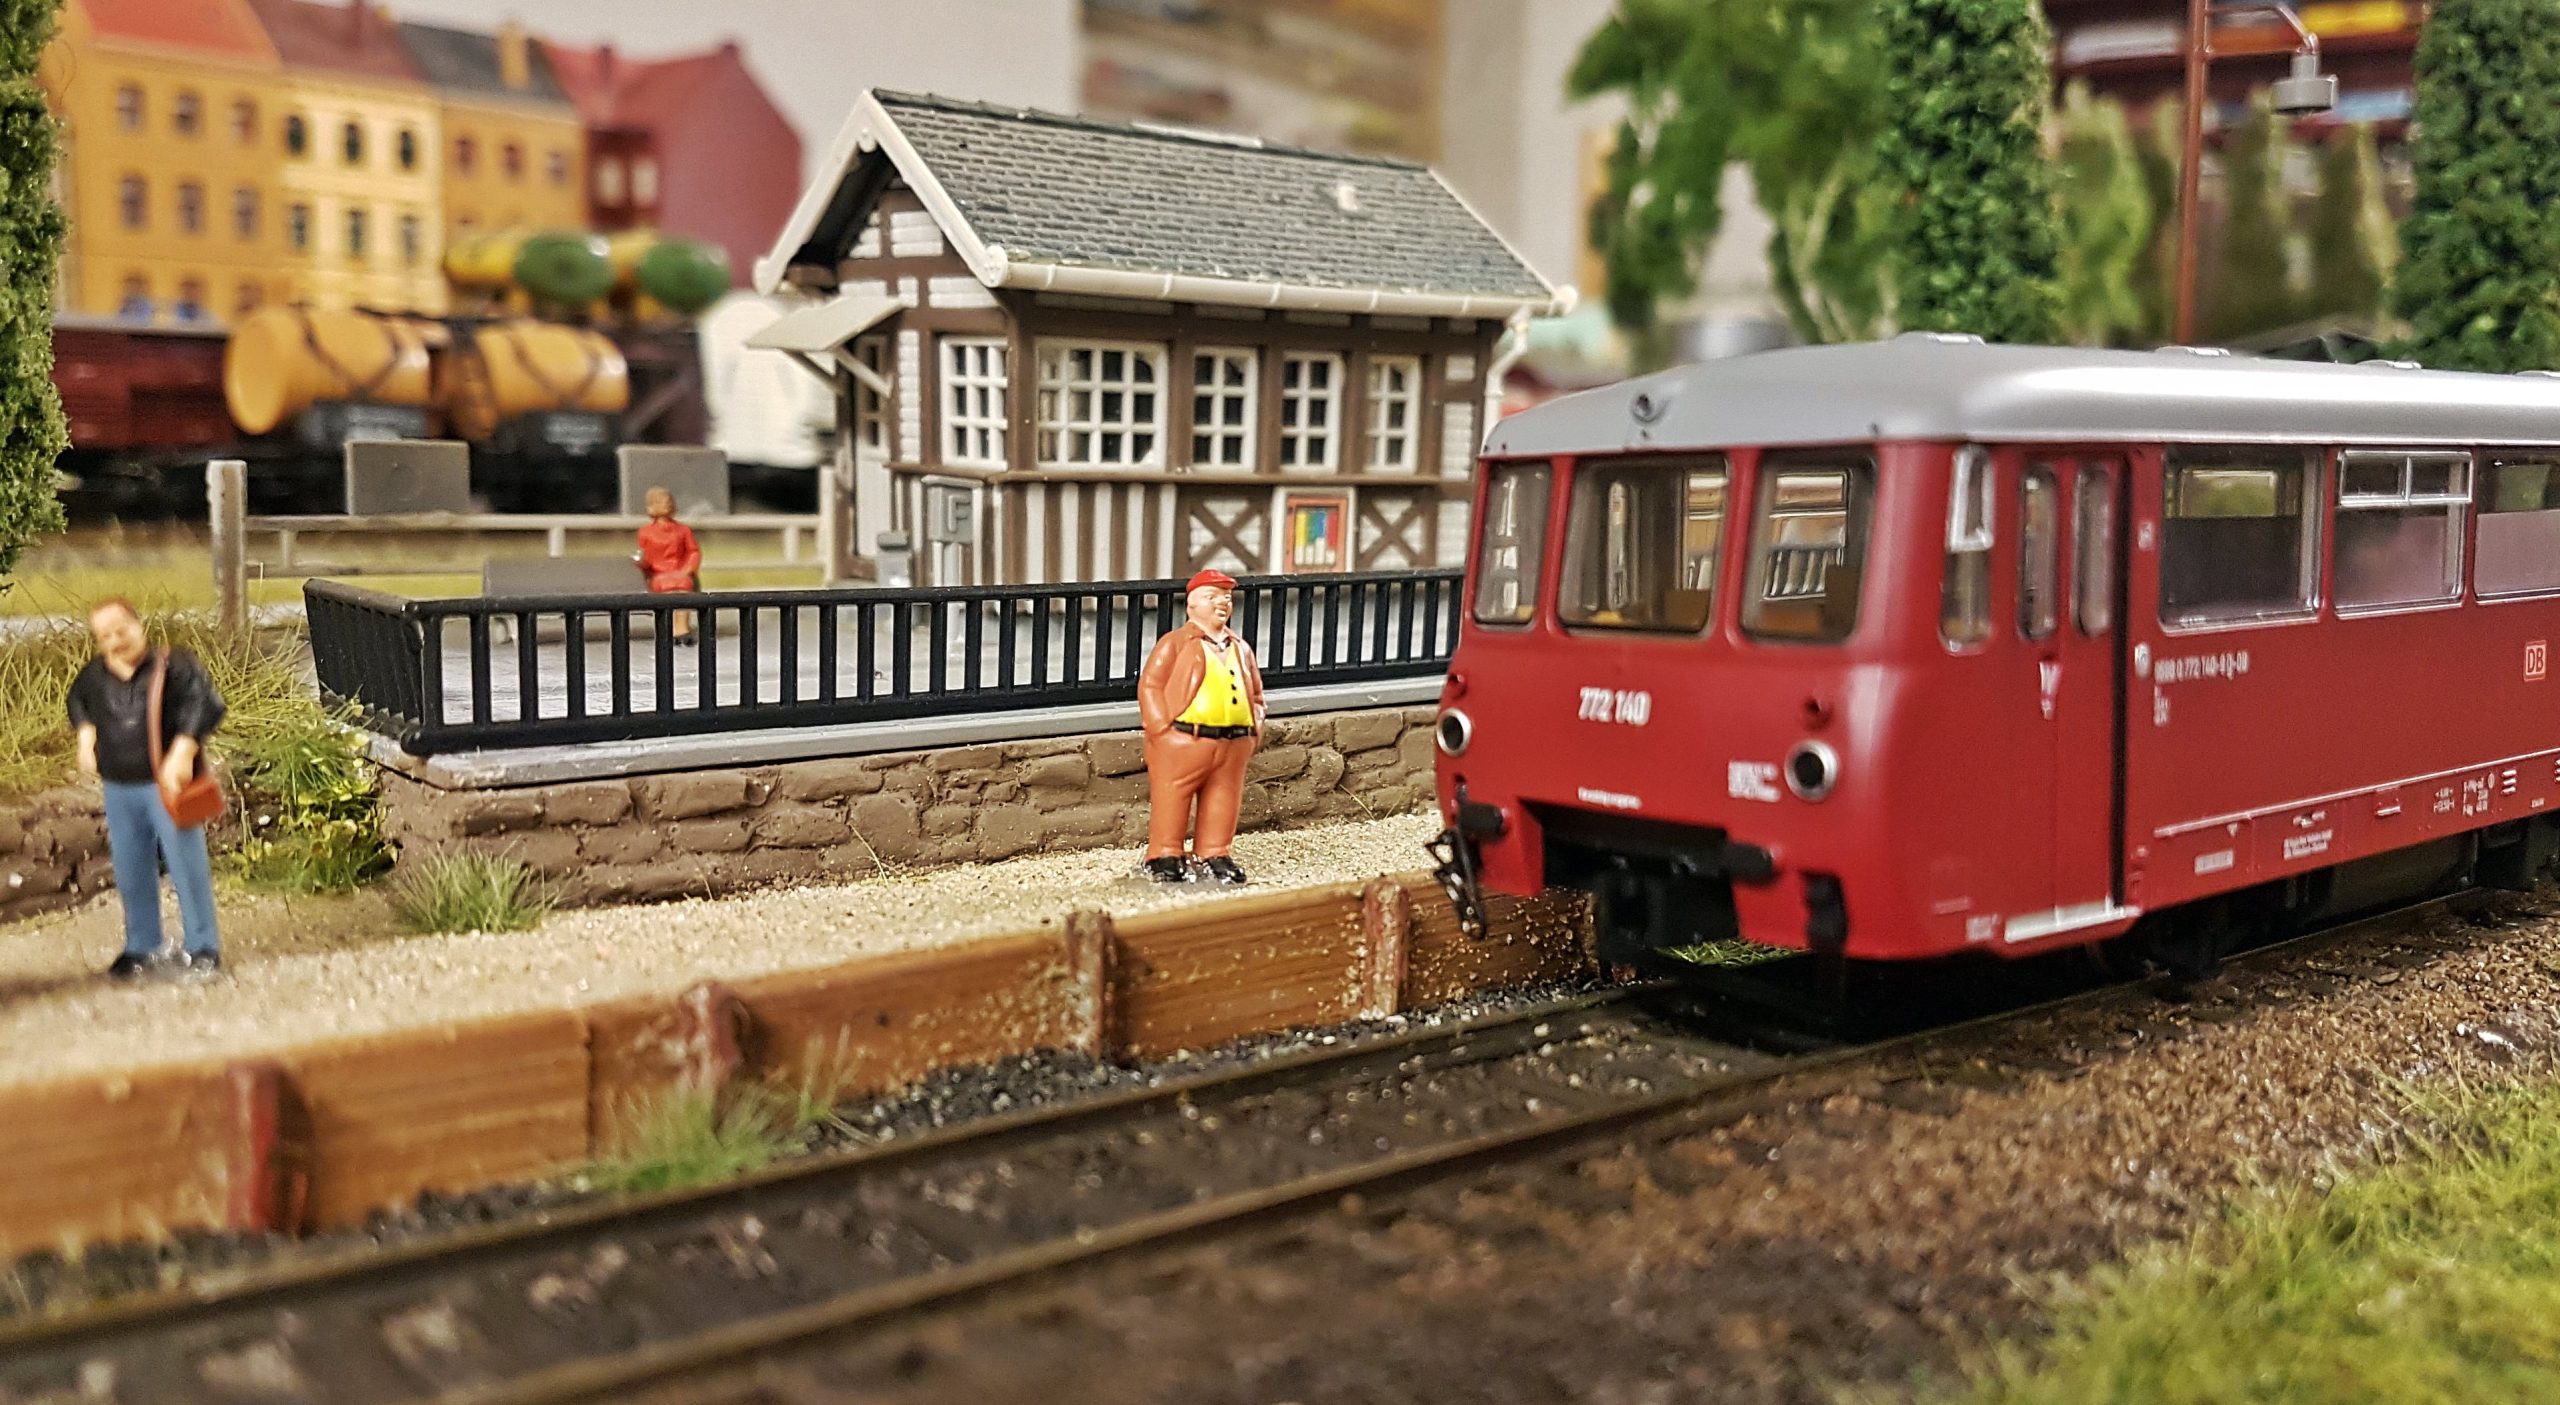 Miniatureisenbahnlandschaft. Ein Mann steht an einem Bahngleis und artet auf den einfahrenden Zug